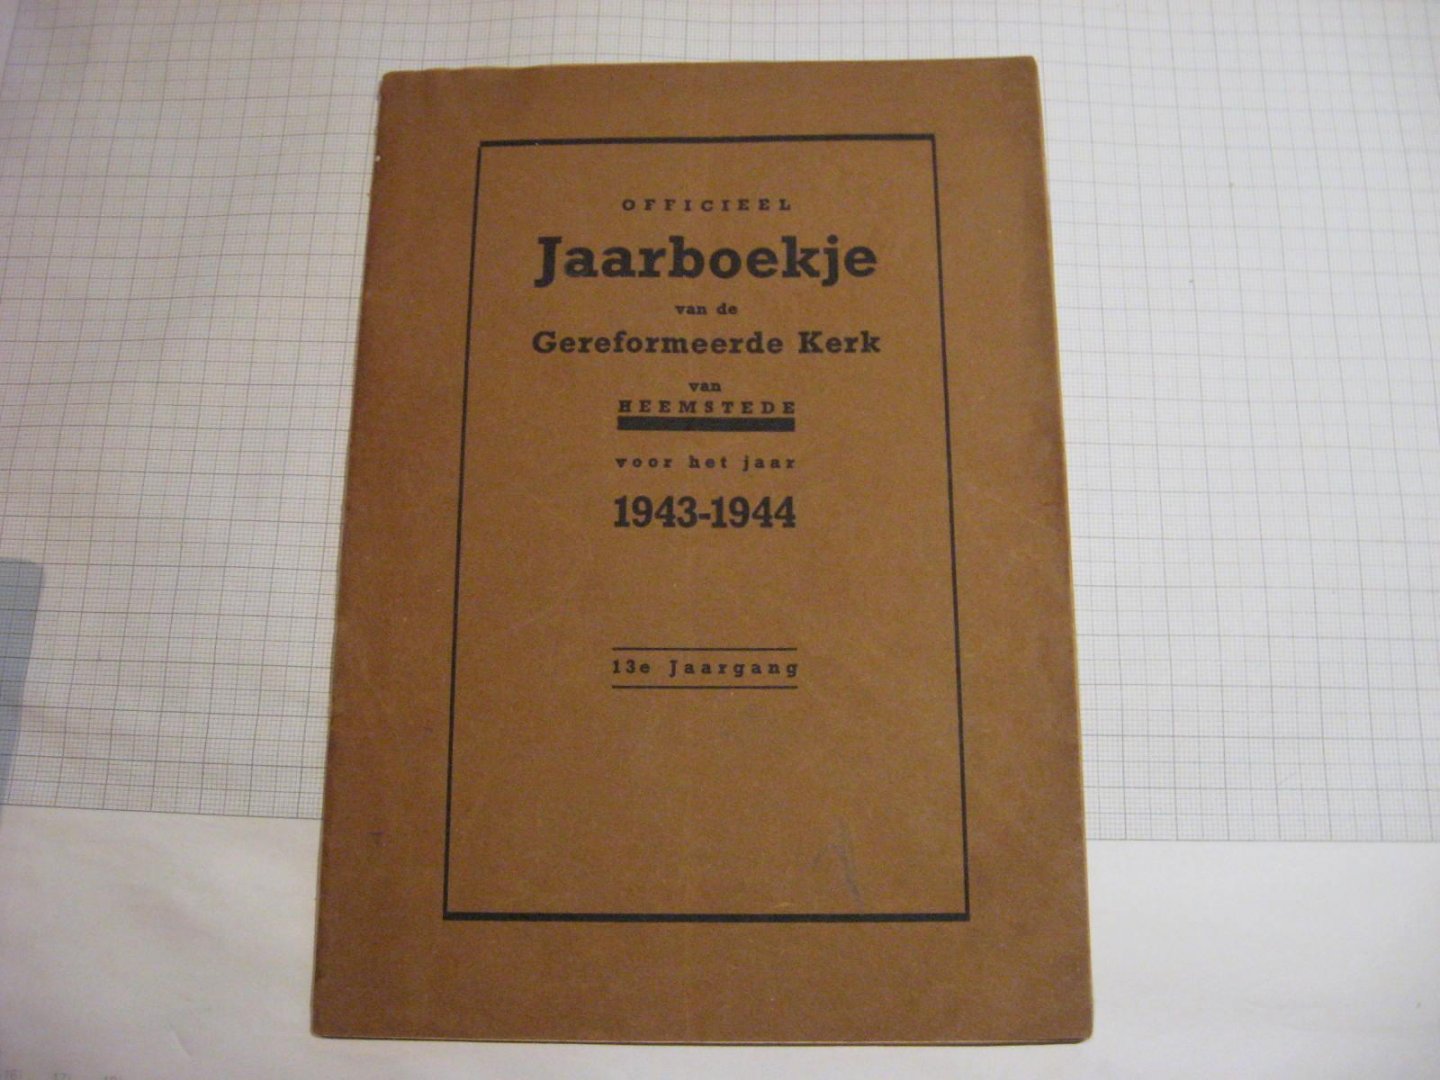 Redactie - Officieel Jaarboekje v/d/ Gereformeerde Kerk van Heemstede 1943-1944